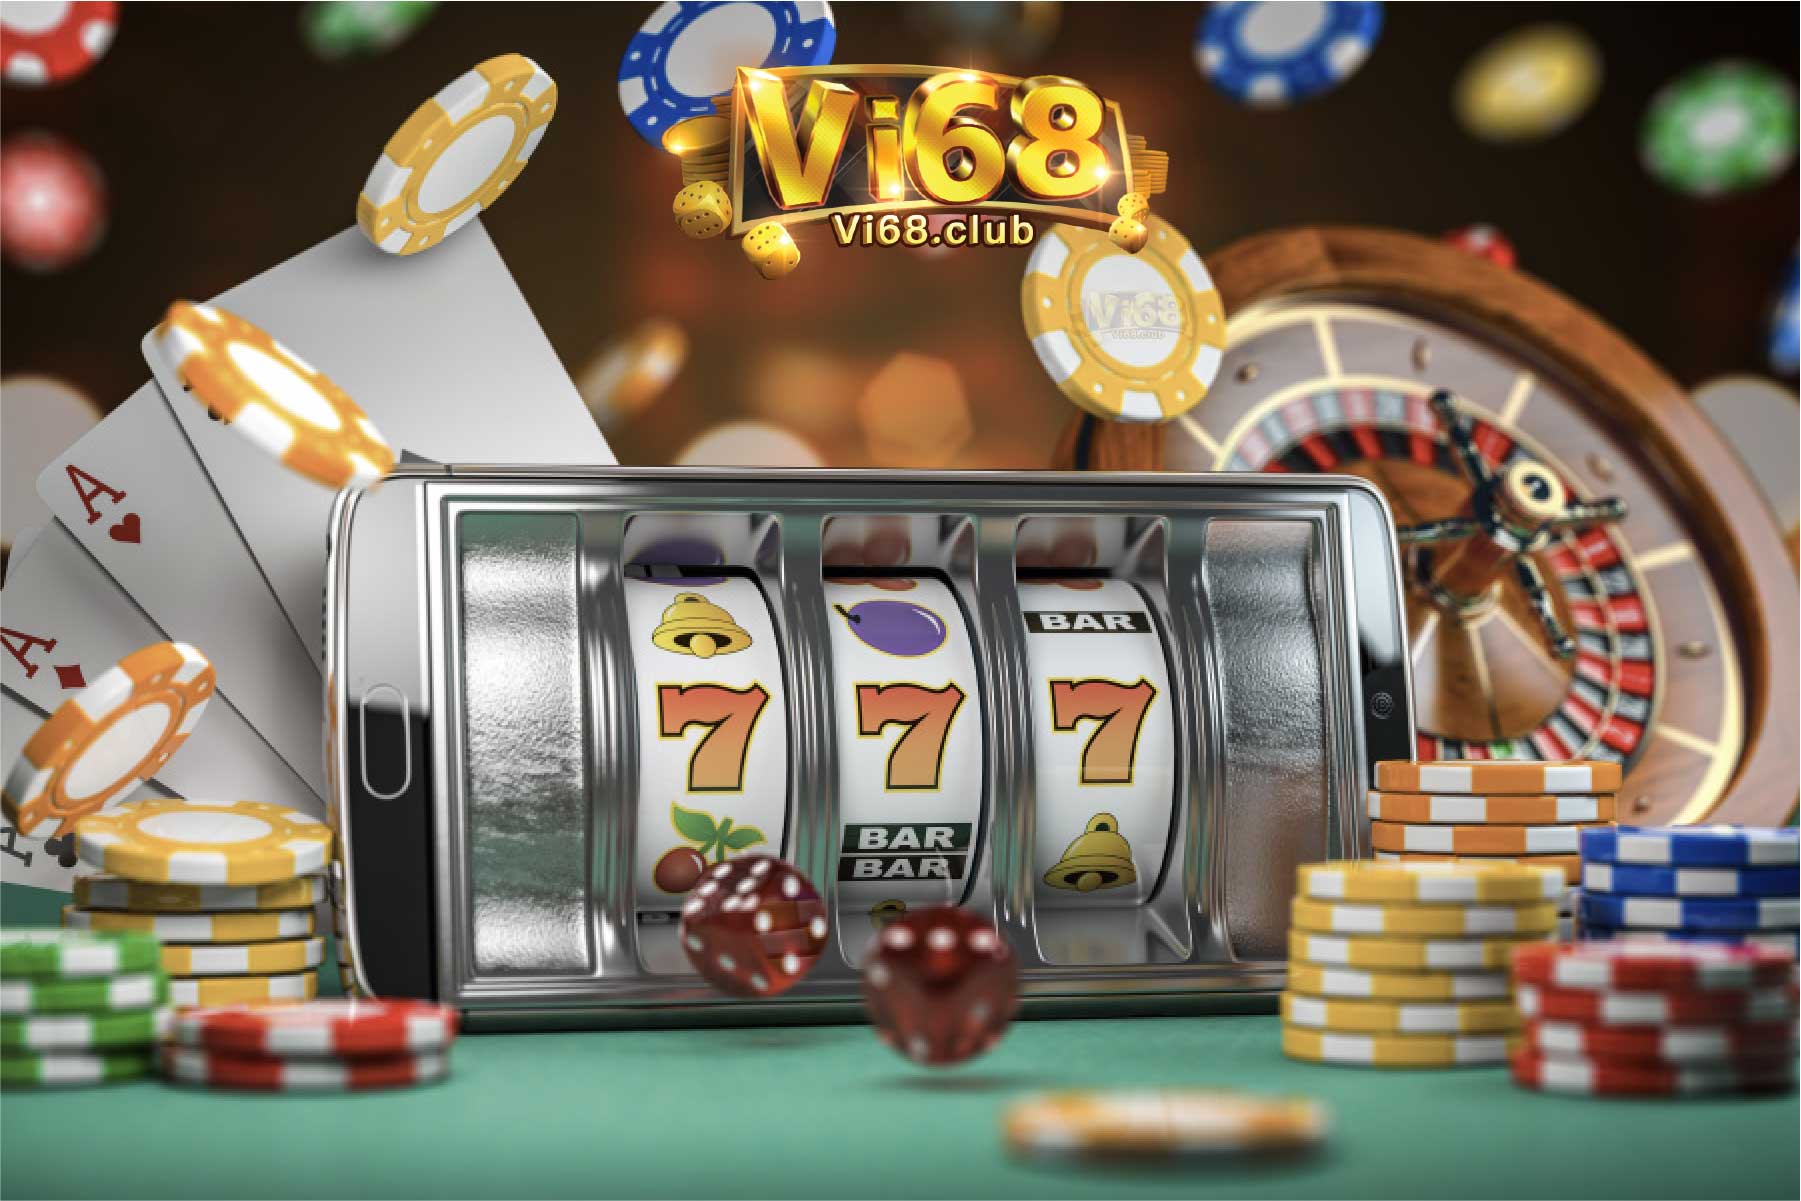 hướng dẫn cách chơi casino Vi68